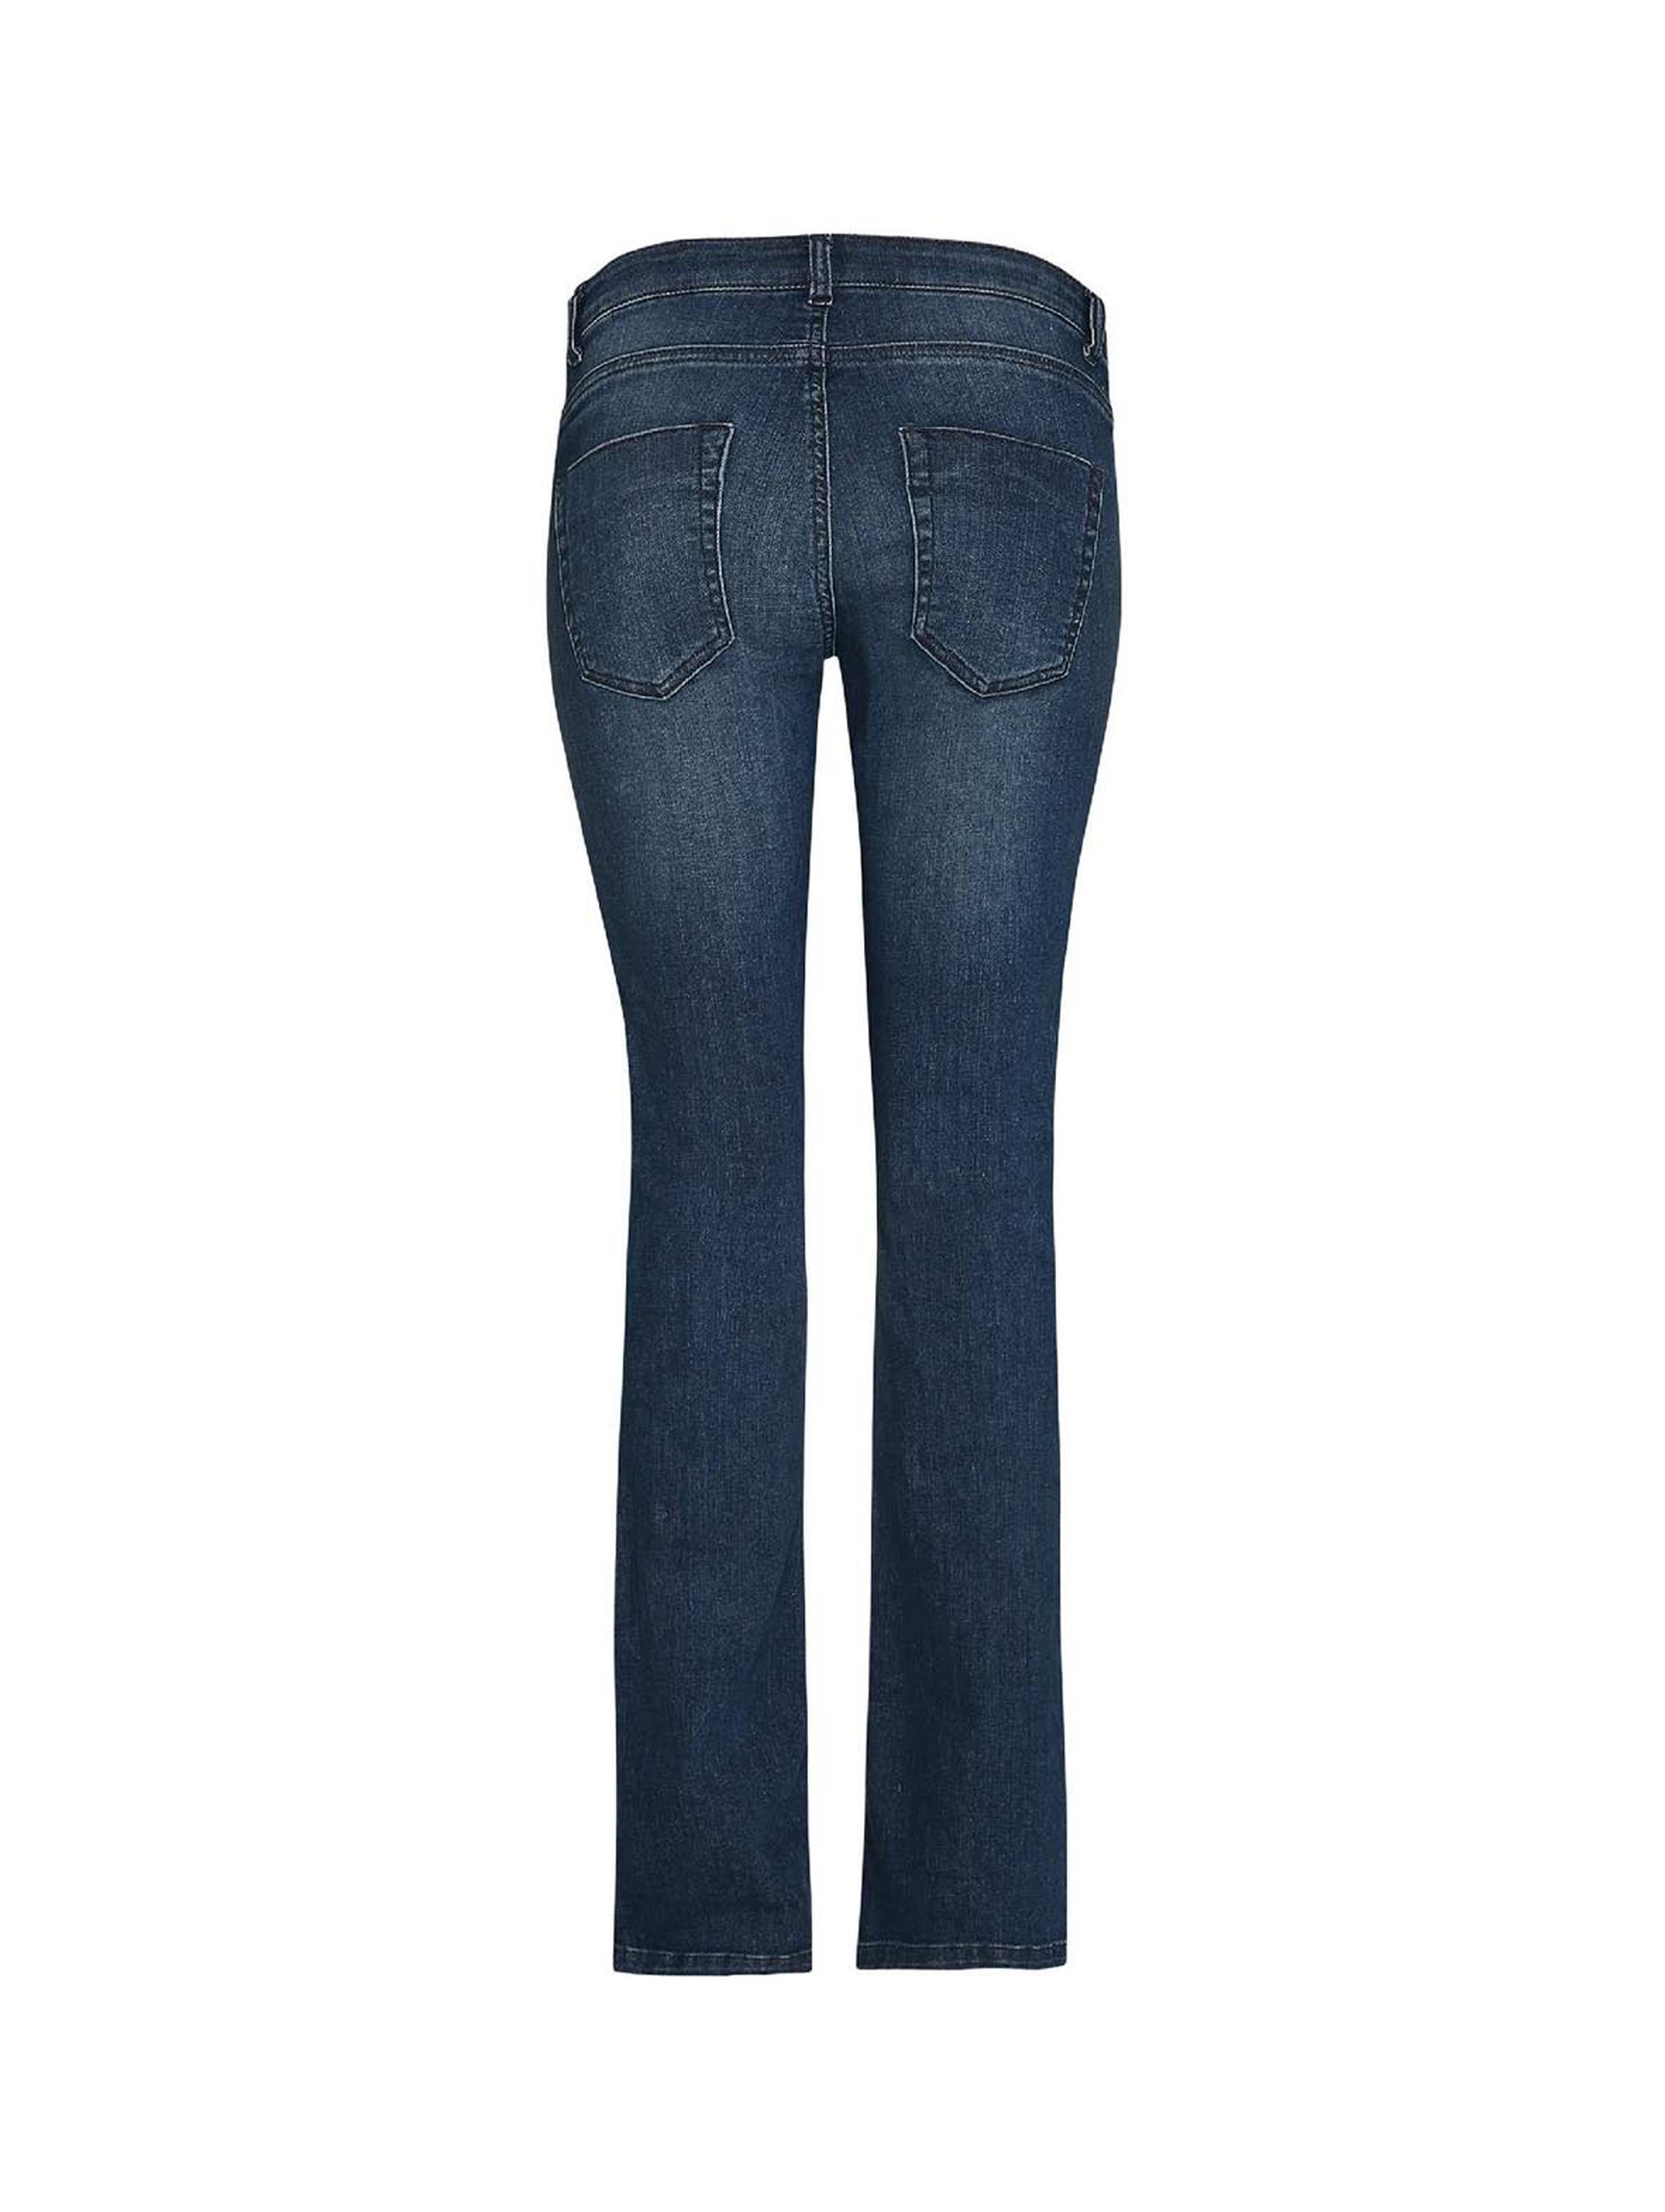 Spodnie jeansowe damskie, ciążowe, bootcut, ciemnoniebieskie, Bellybutton